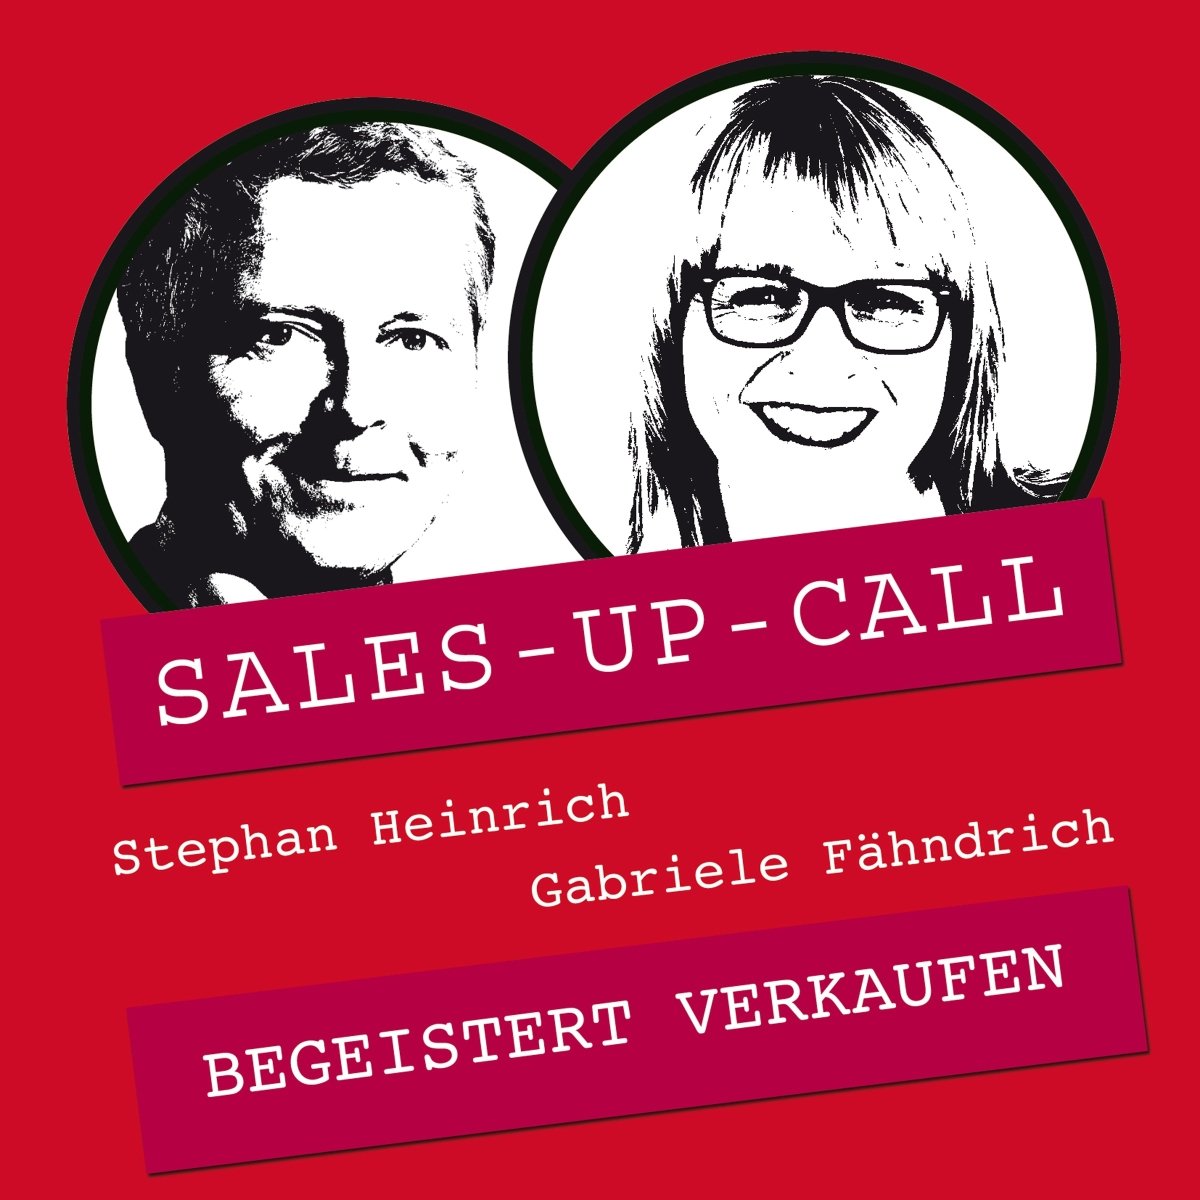 Begeistert verkaufen - Sales-up-Call - Stephan Heinrich